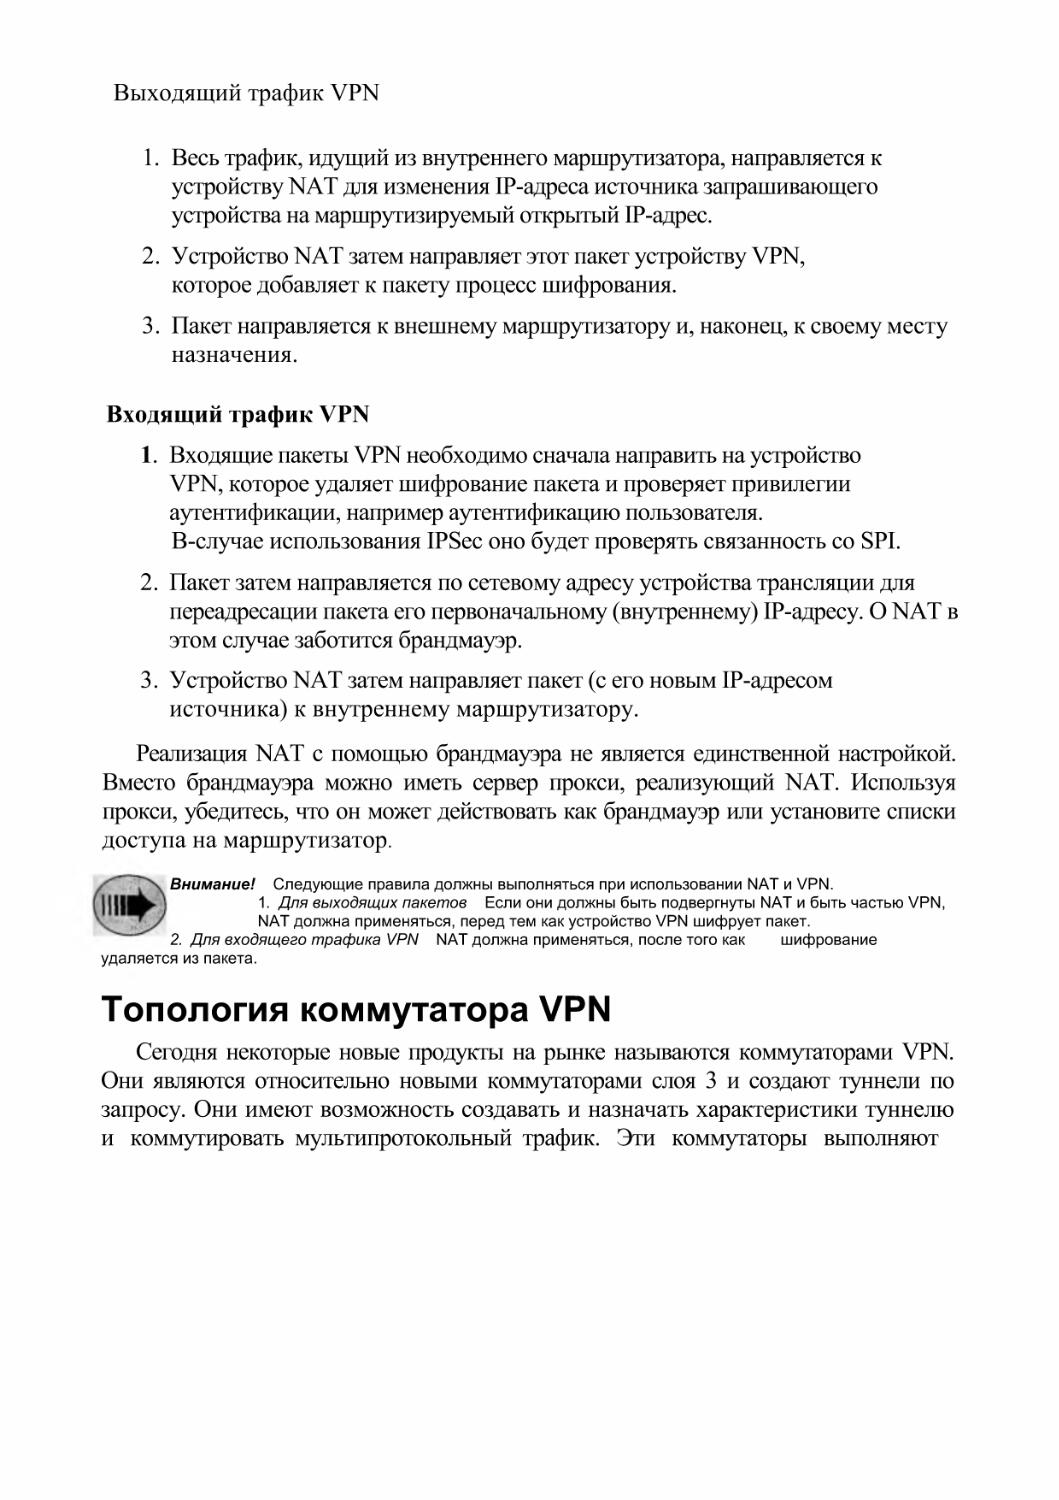 Топология коммутатора VPN